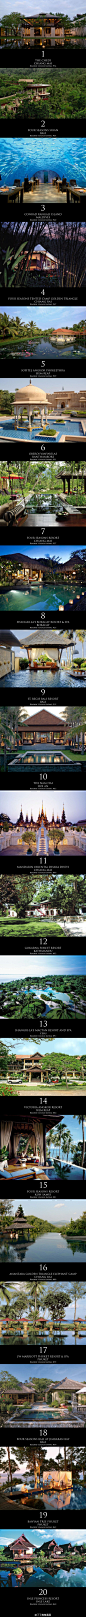 （#Conde Nast Traveler 2013 Readers' Choice Awards#）Top 20 Resorts in Asia，年度亚洲20佳度假村，分布在马尔代夫，印度，柬埔寨，泰国，印尼，缅甸，尼泊尔和越南。其中GHM旗下的清迈切蒂居榜首，这份榜单中还有马尔代夫的港丽，金三角四季，会安南海酒店以及1994年开业的普吉岛悦榕庄等。